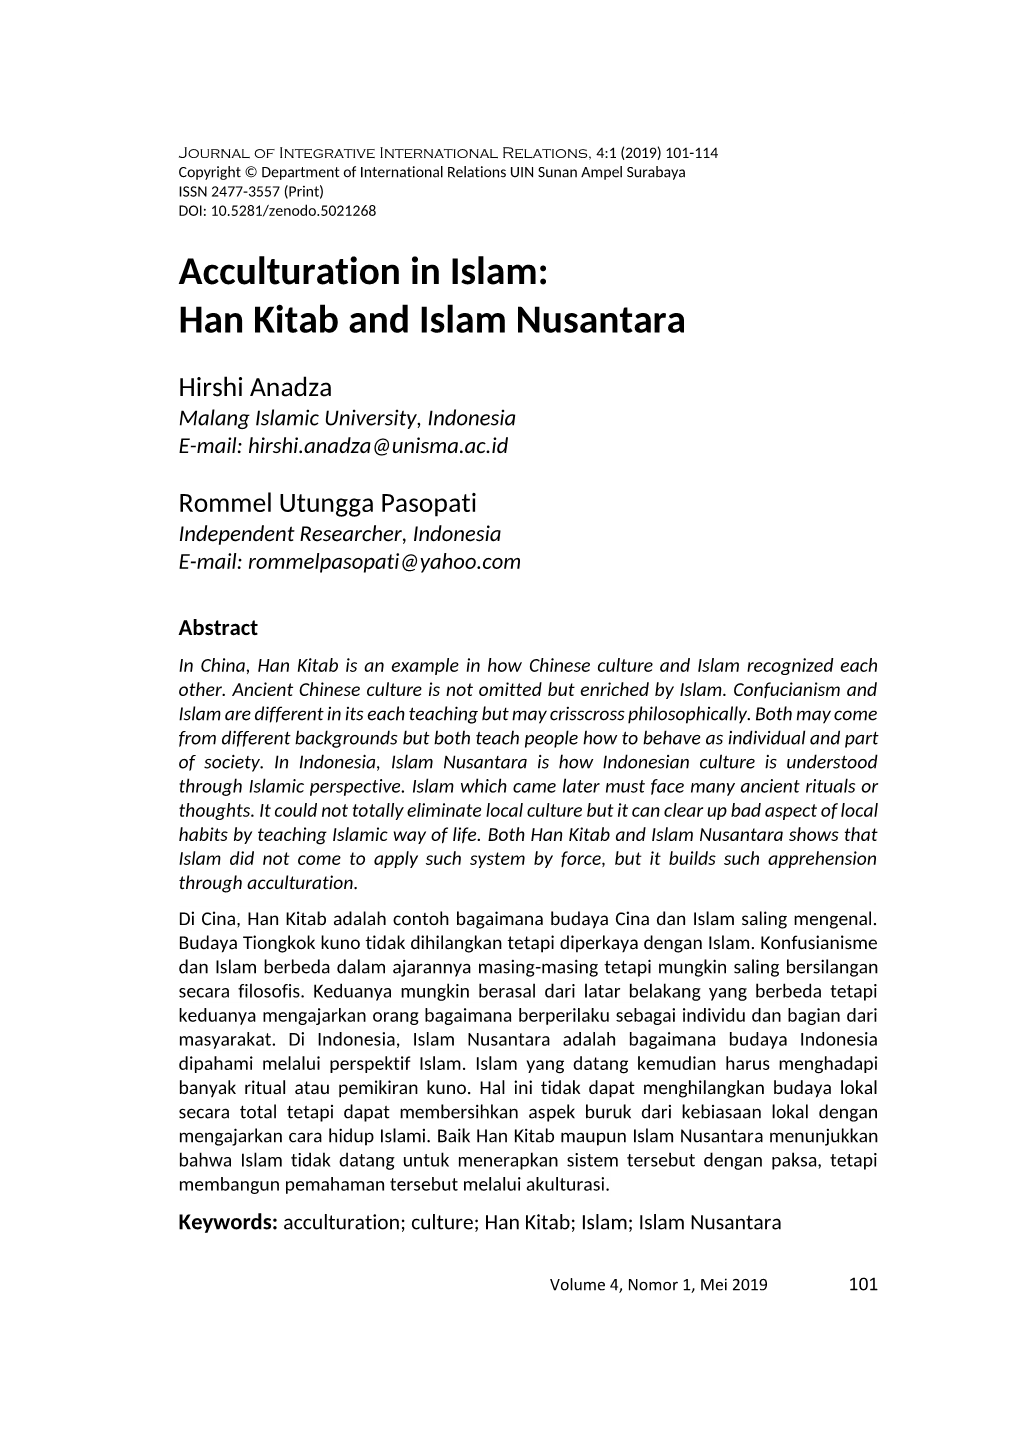 Han Kitab and Islam Nusantara